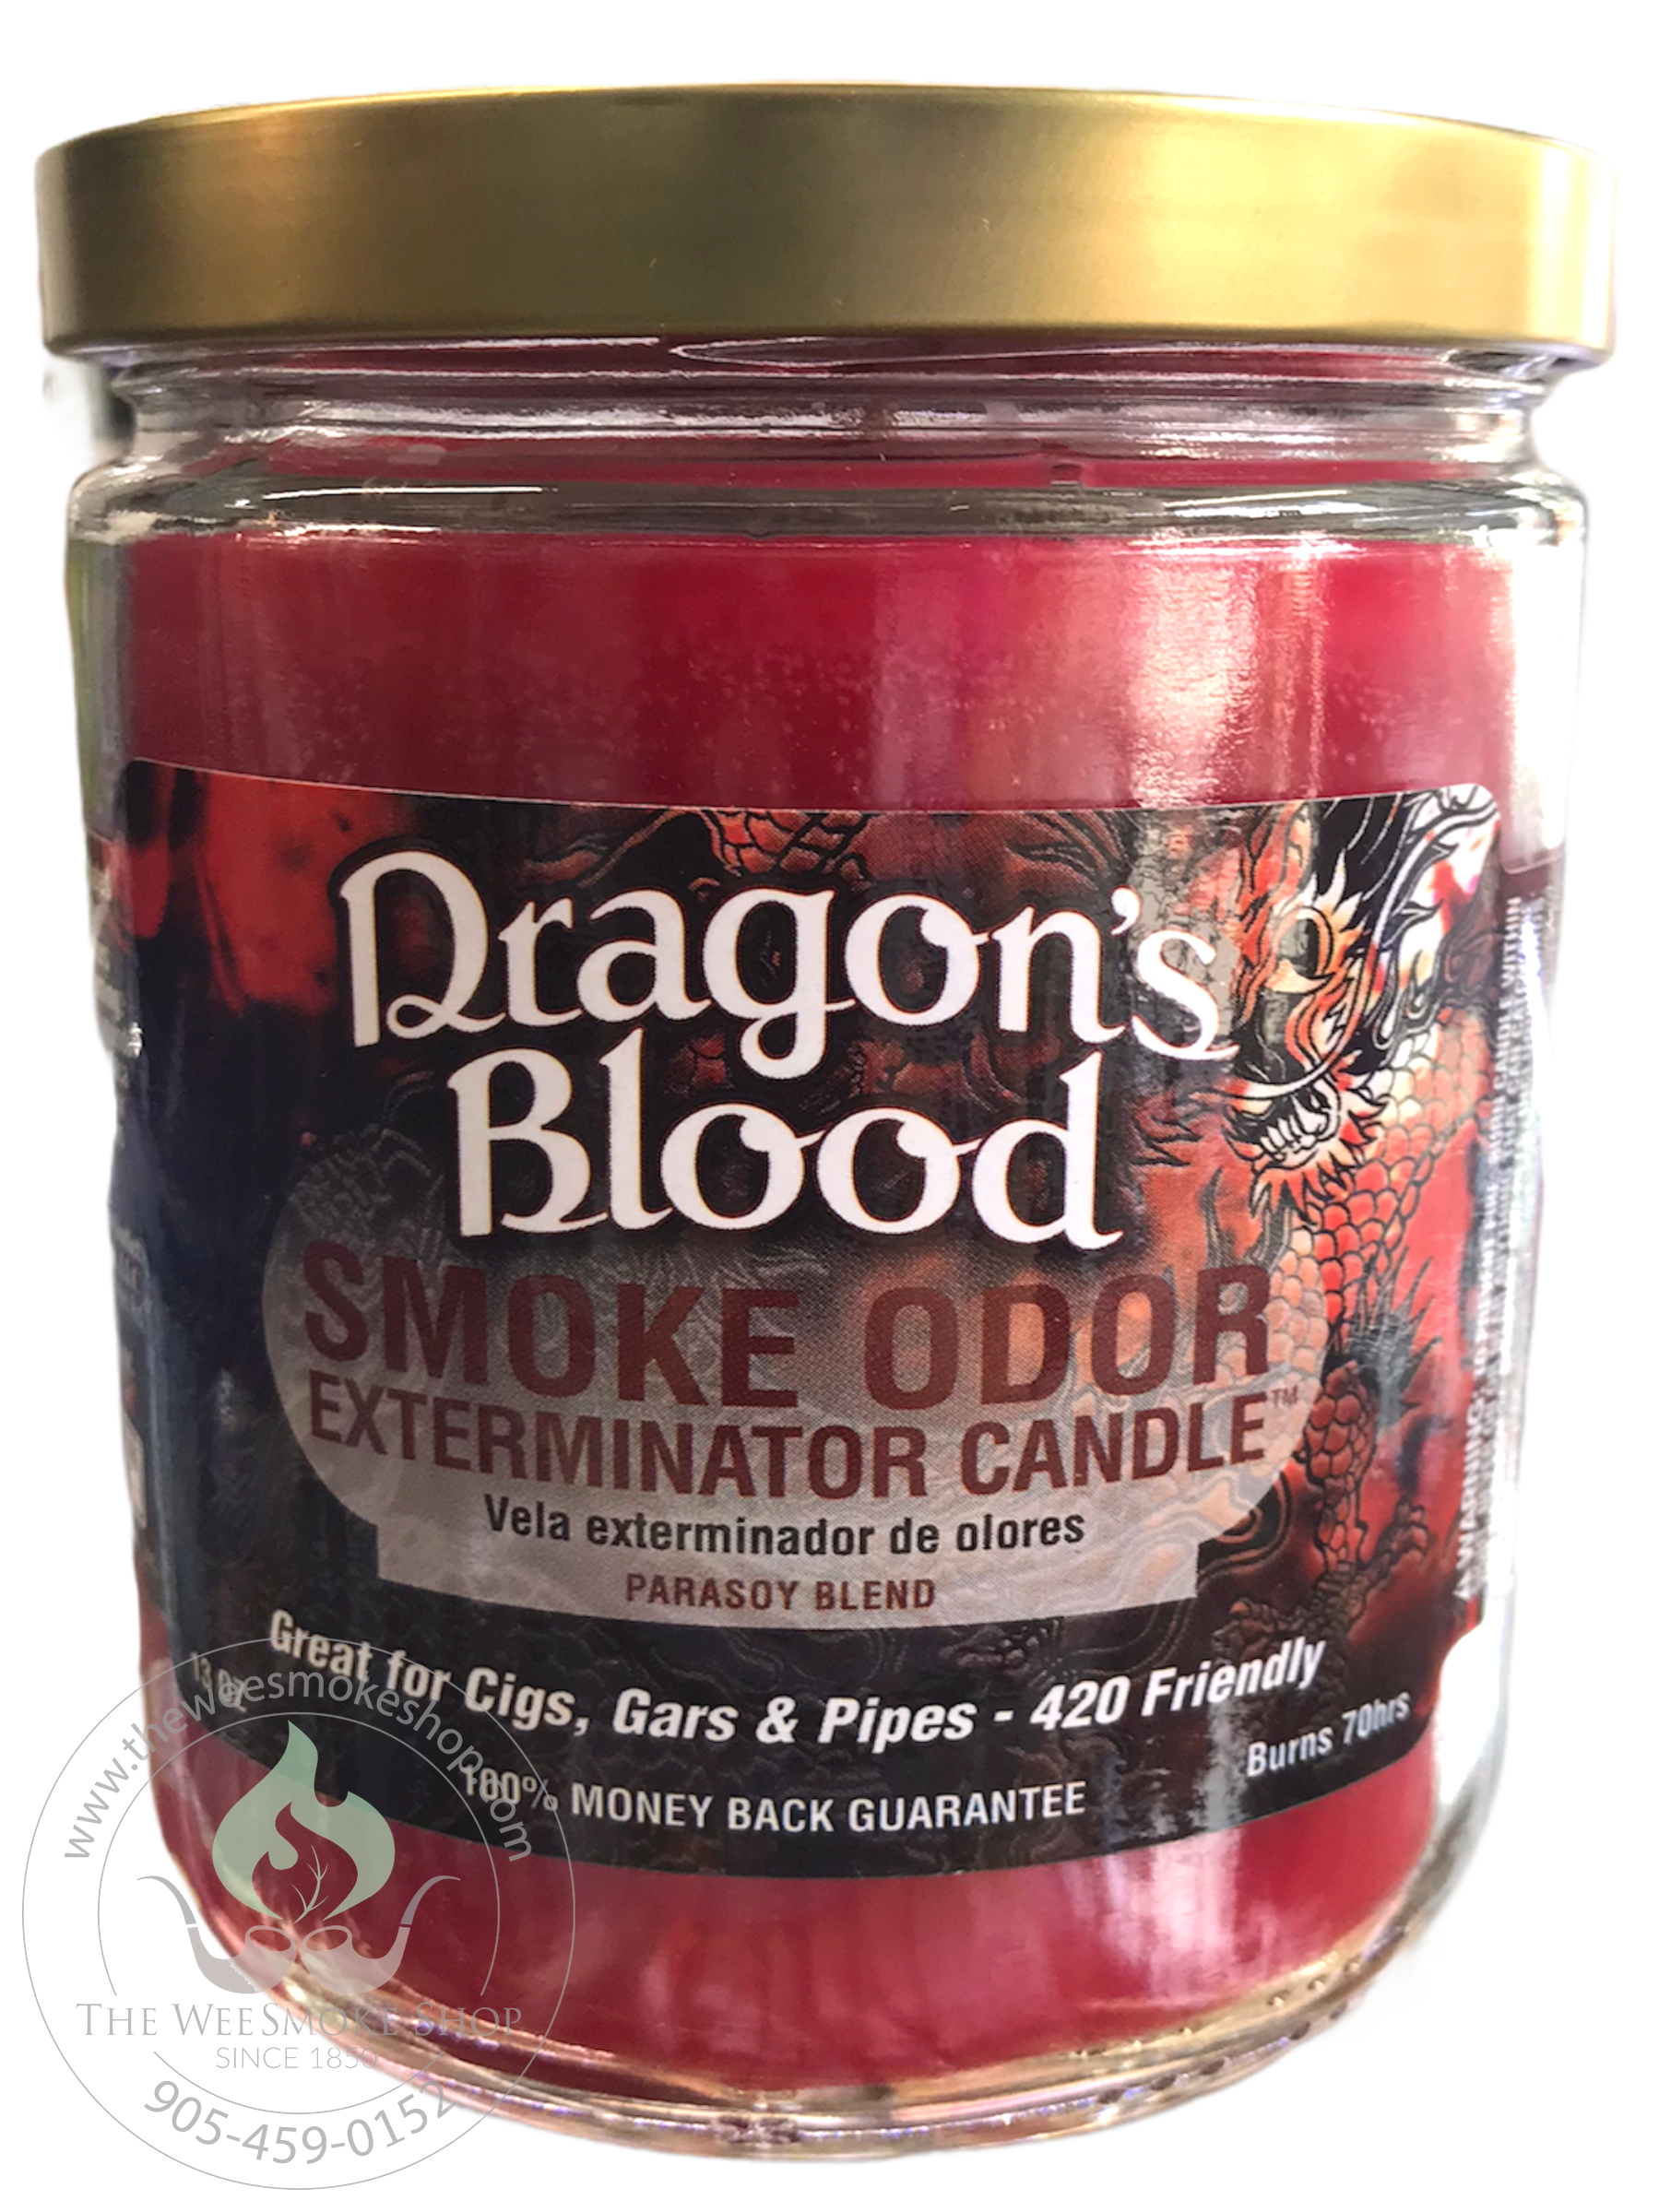 Dragons' Blood Smoke Odor Exterminator Candle - Wee Smoke Shop